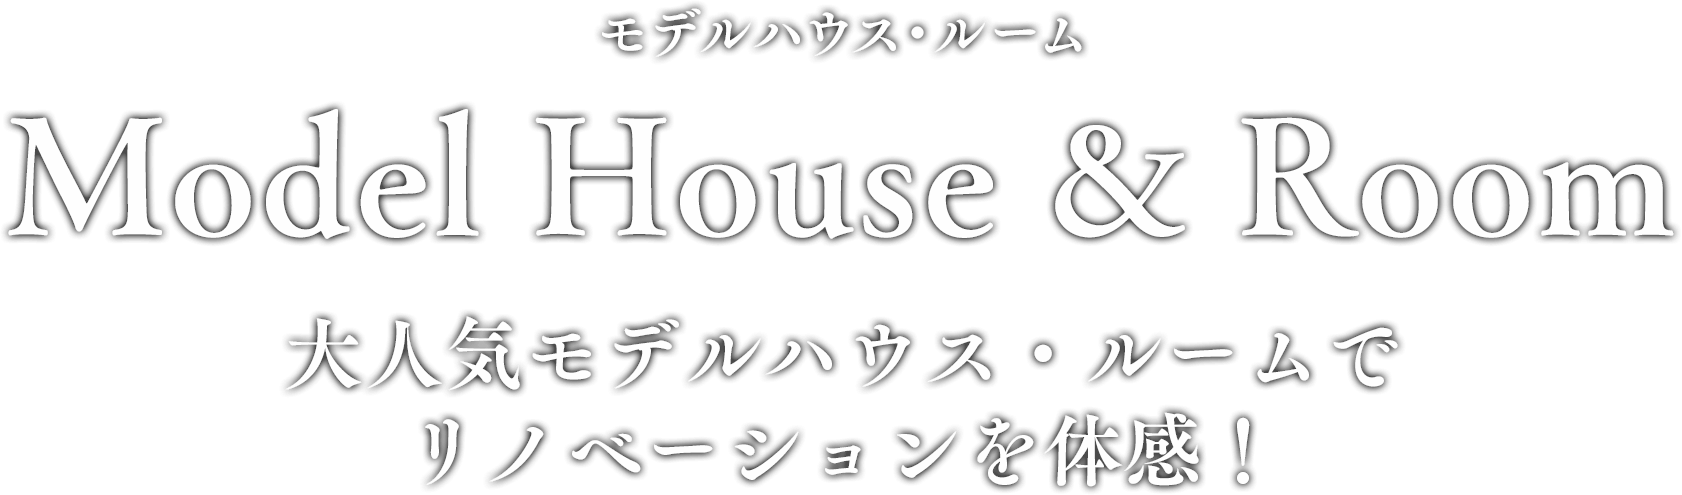 MODEL HOUSE & ROOM